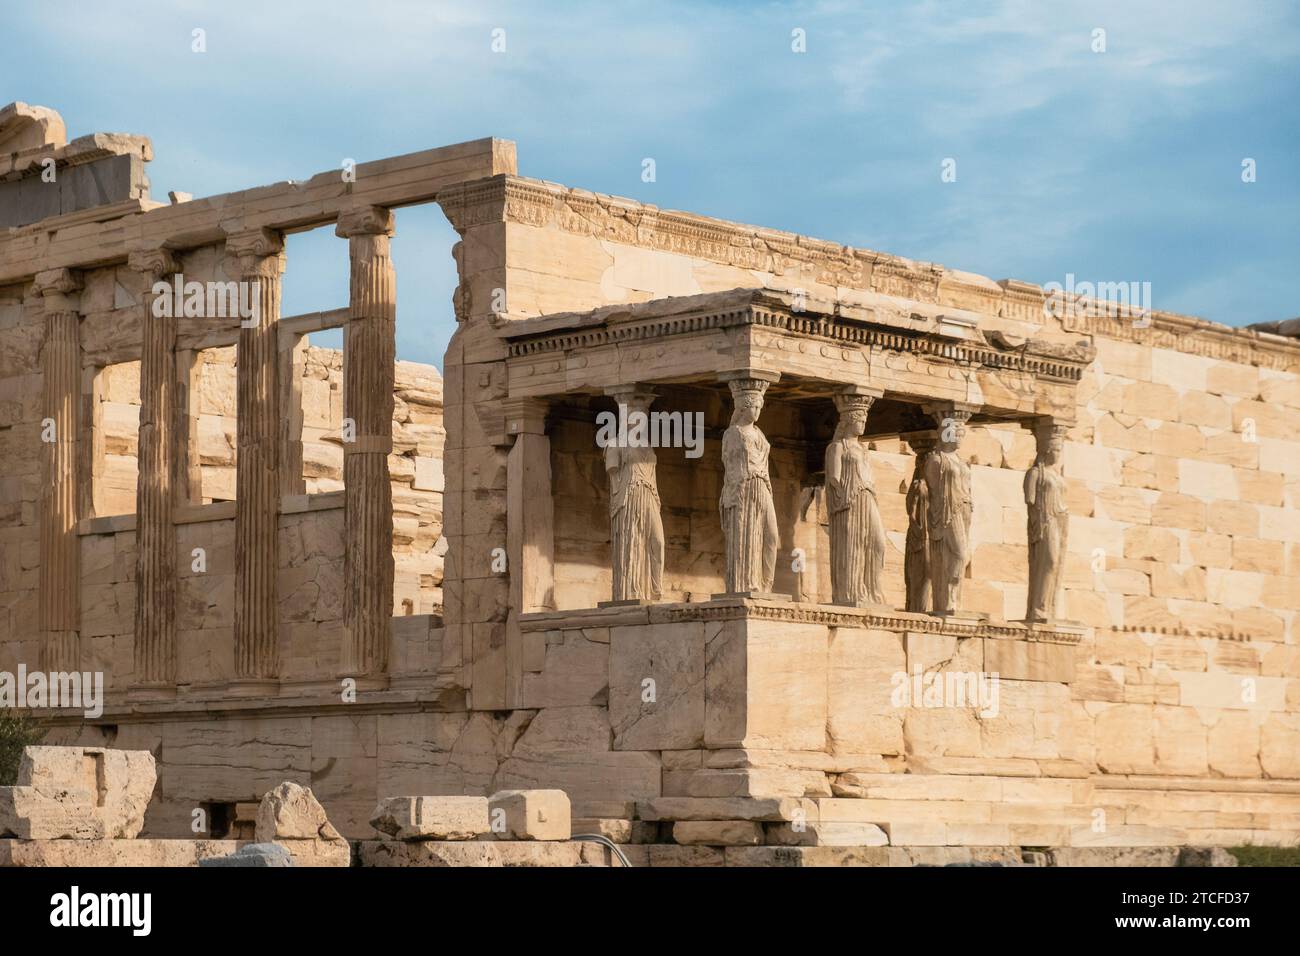 Porche de statues de cariatides au temple d'Erechtheion, Acropole d'Athènes, Grèce. Erechtheum est un ancien temple ionique grec d'Athéna Polias en Grèce Banque D'Images